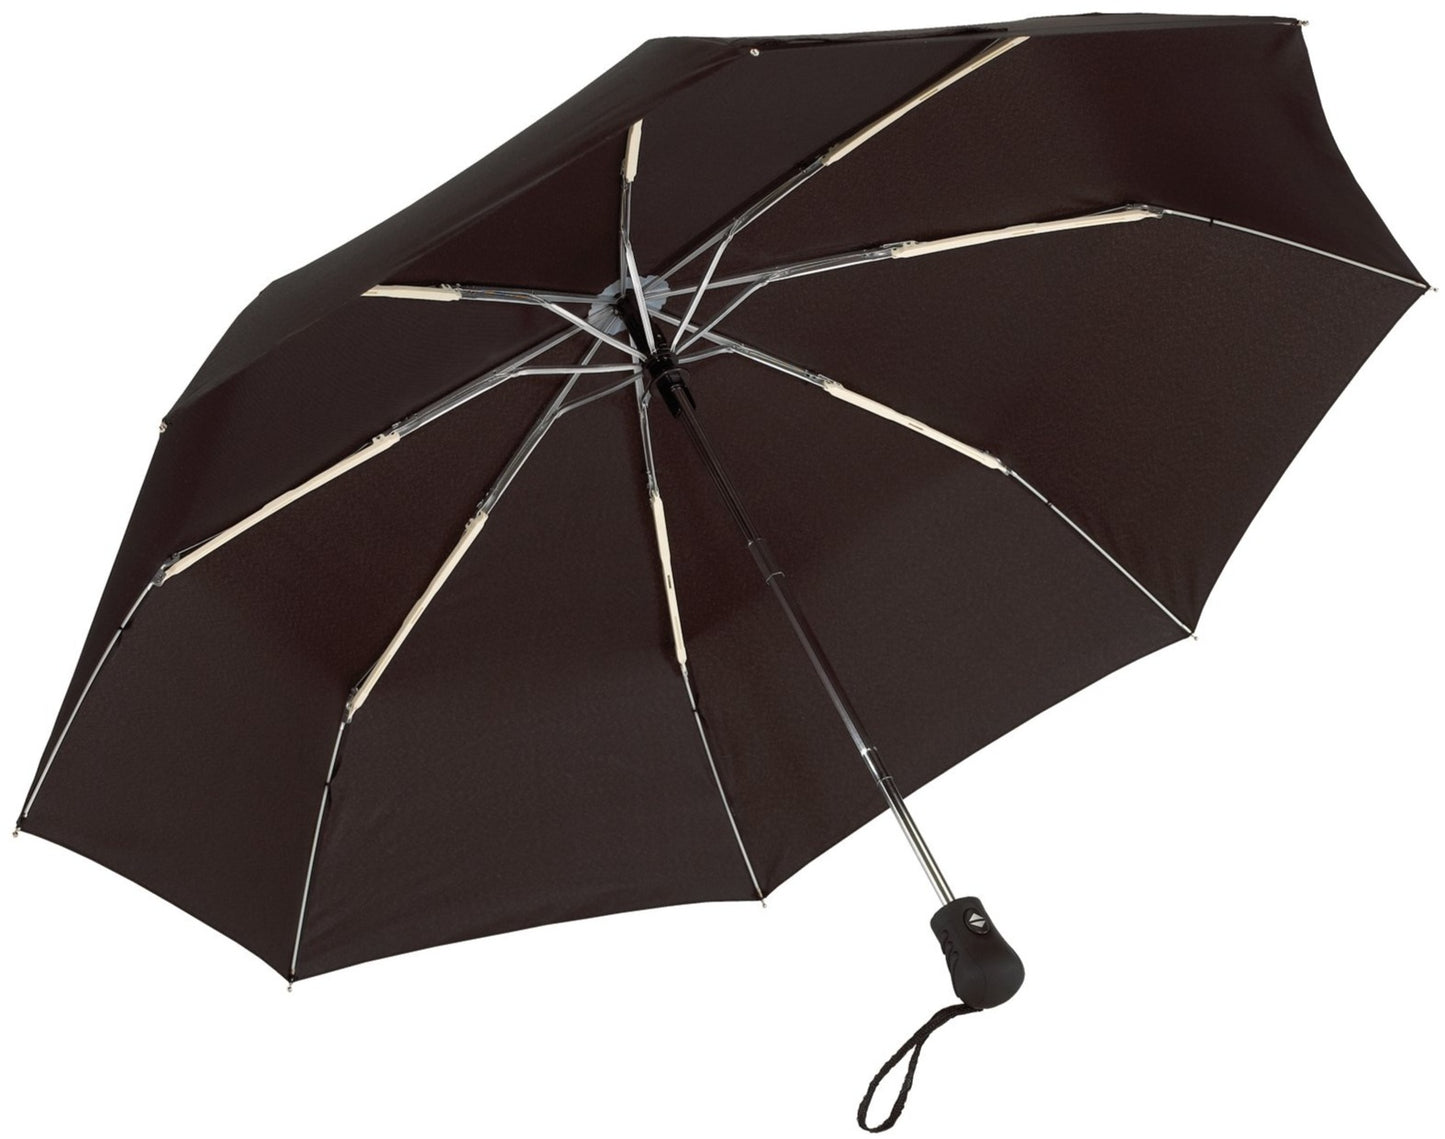 Μαύρη Ομπρέλα βροχής, μίνι, Αντιανεμική και Twinmatic (κωδικός 01-01-0200).